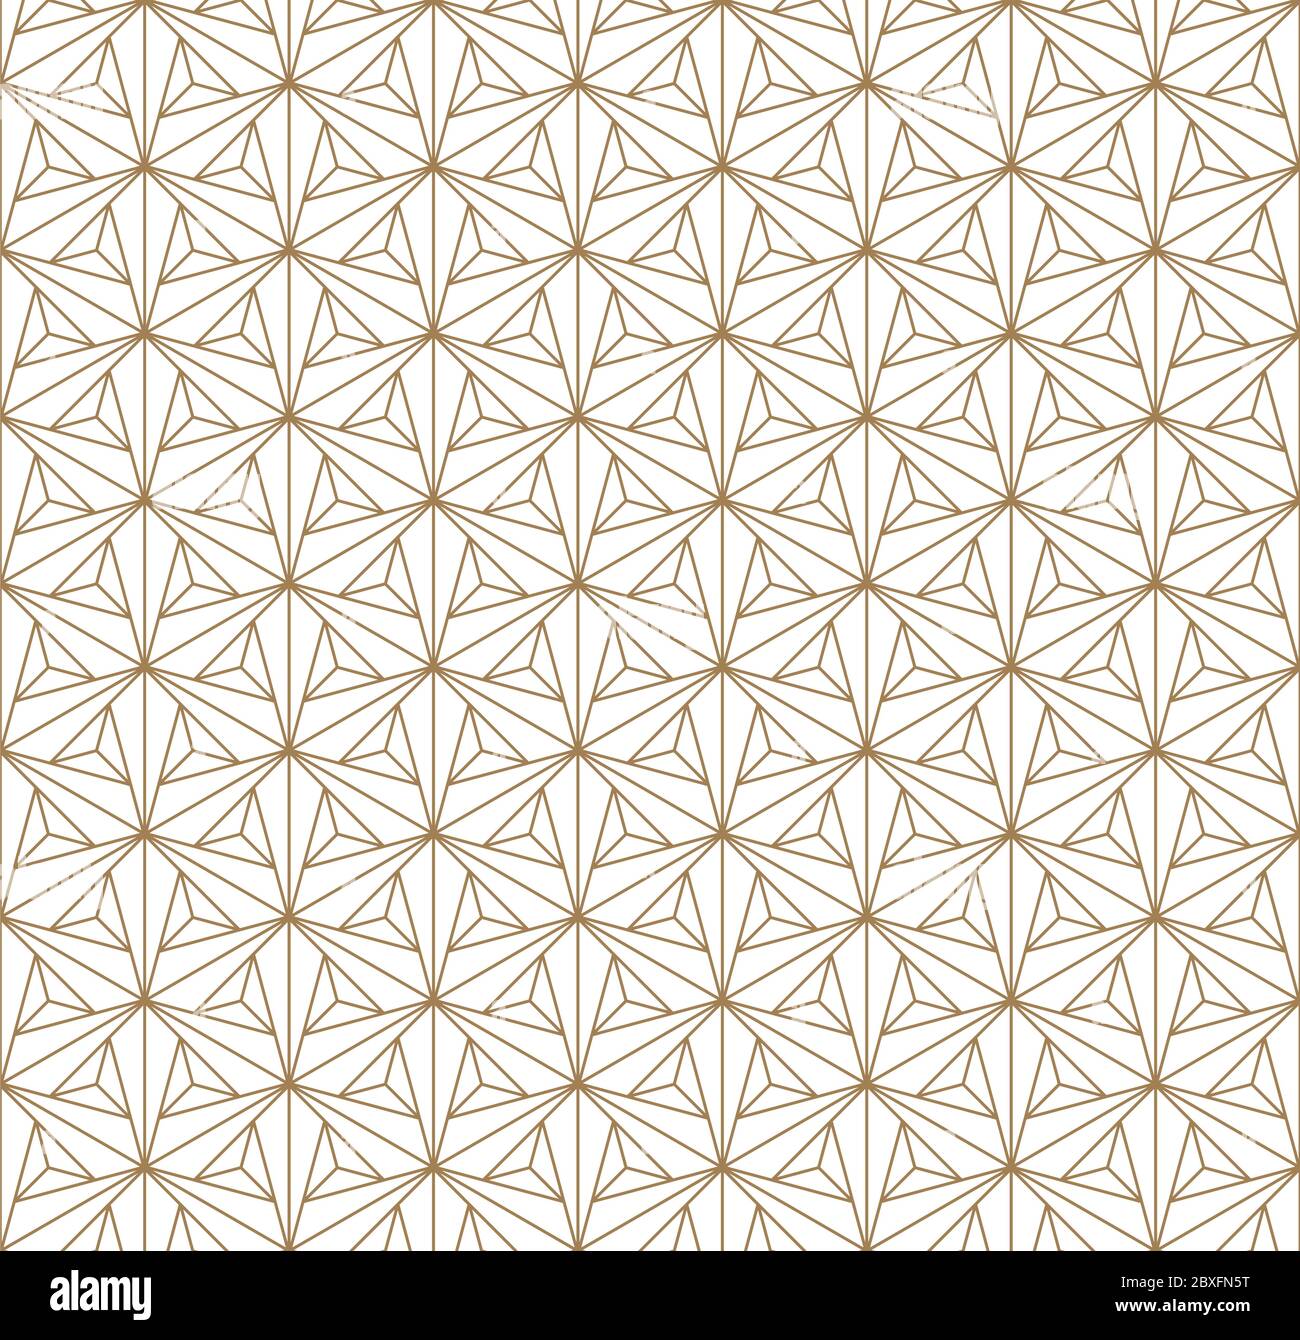 Un motif géométrique inspiré par Kumiko japonais.ornement pour tissu textile,modèle,,du papier d'emballage,Machines de découpe laser et gravure. Patte japonais Illustration de Vecteur